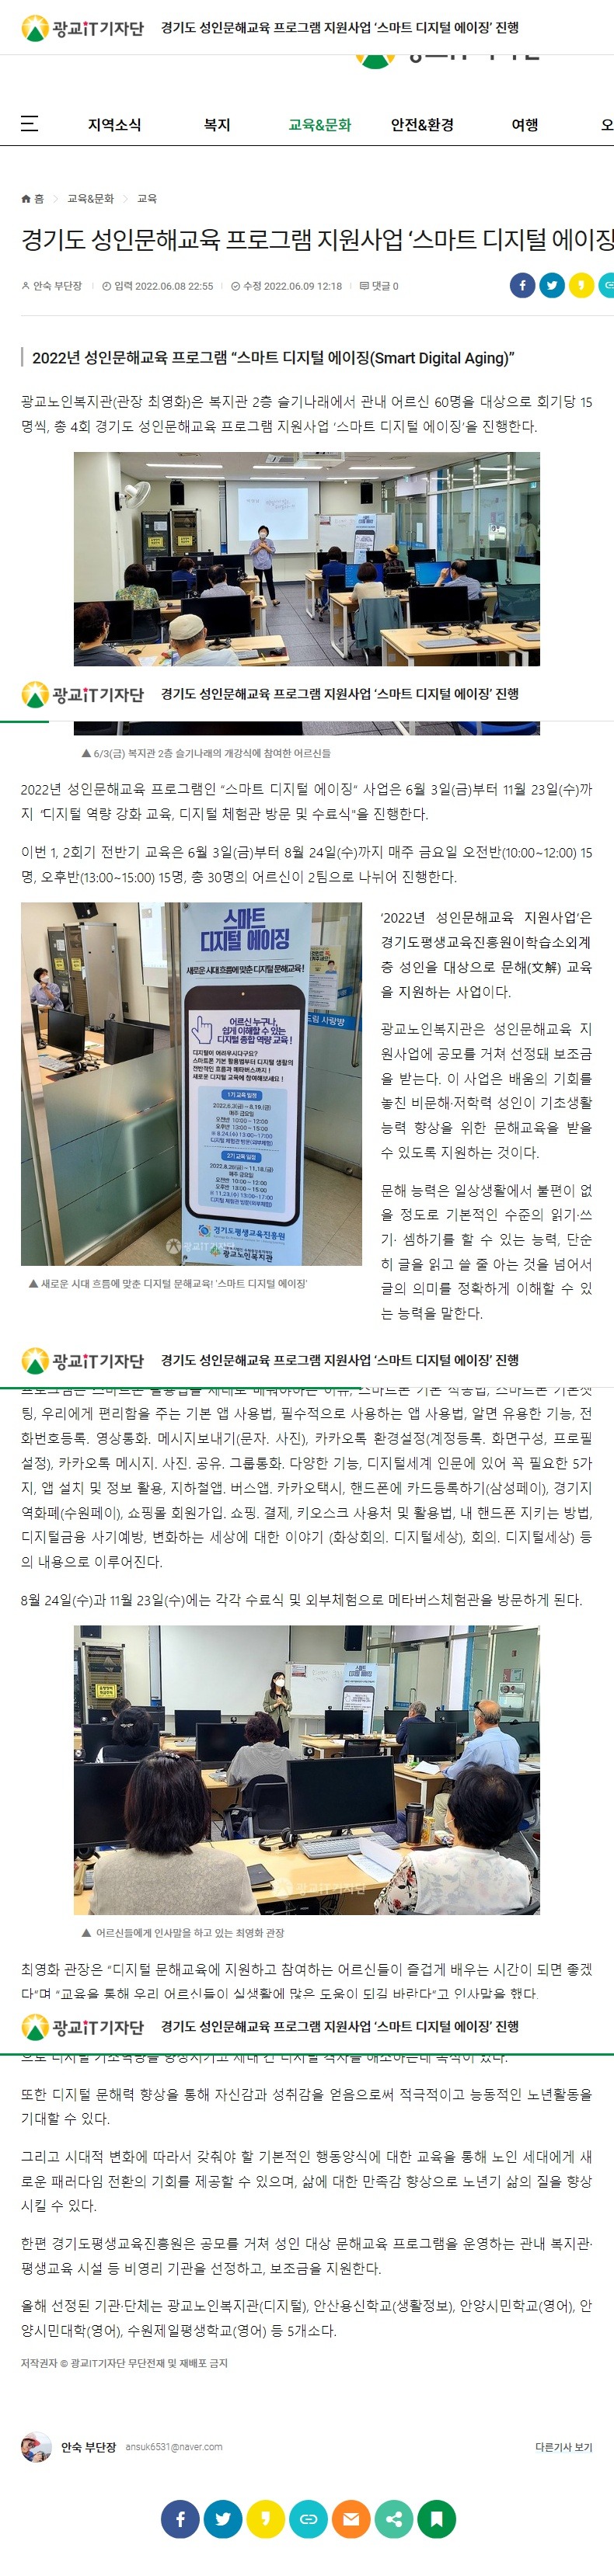 경기도 성인문해교육 프로그램 지원사업 '스마트 디지털 에이징' 진행.jpg